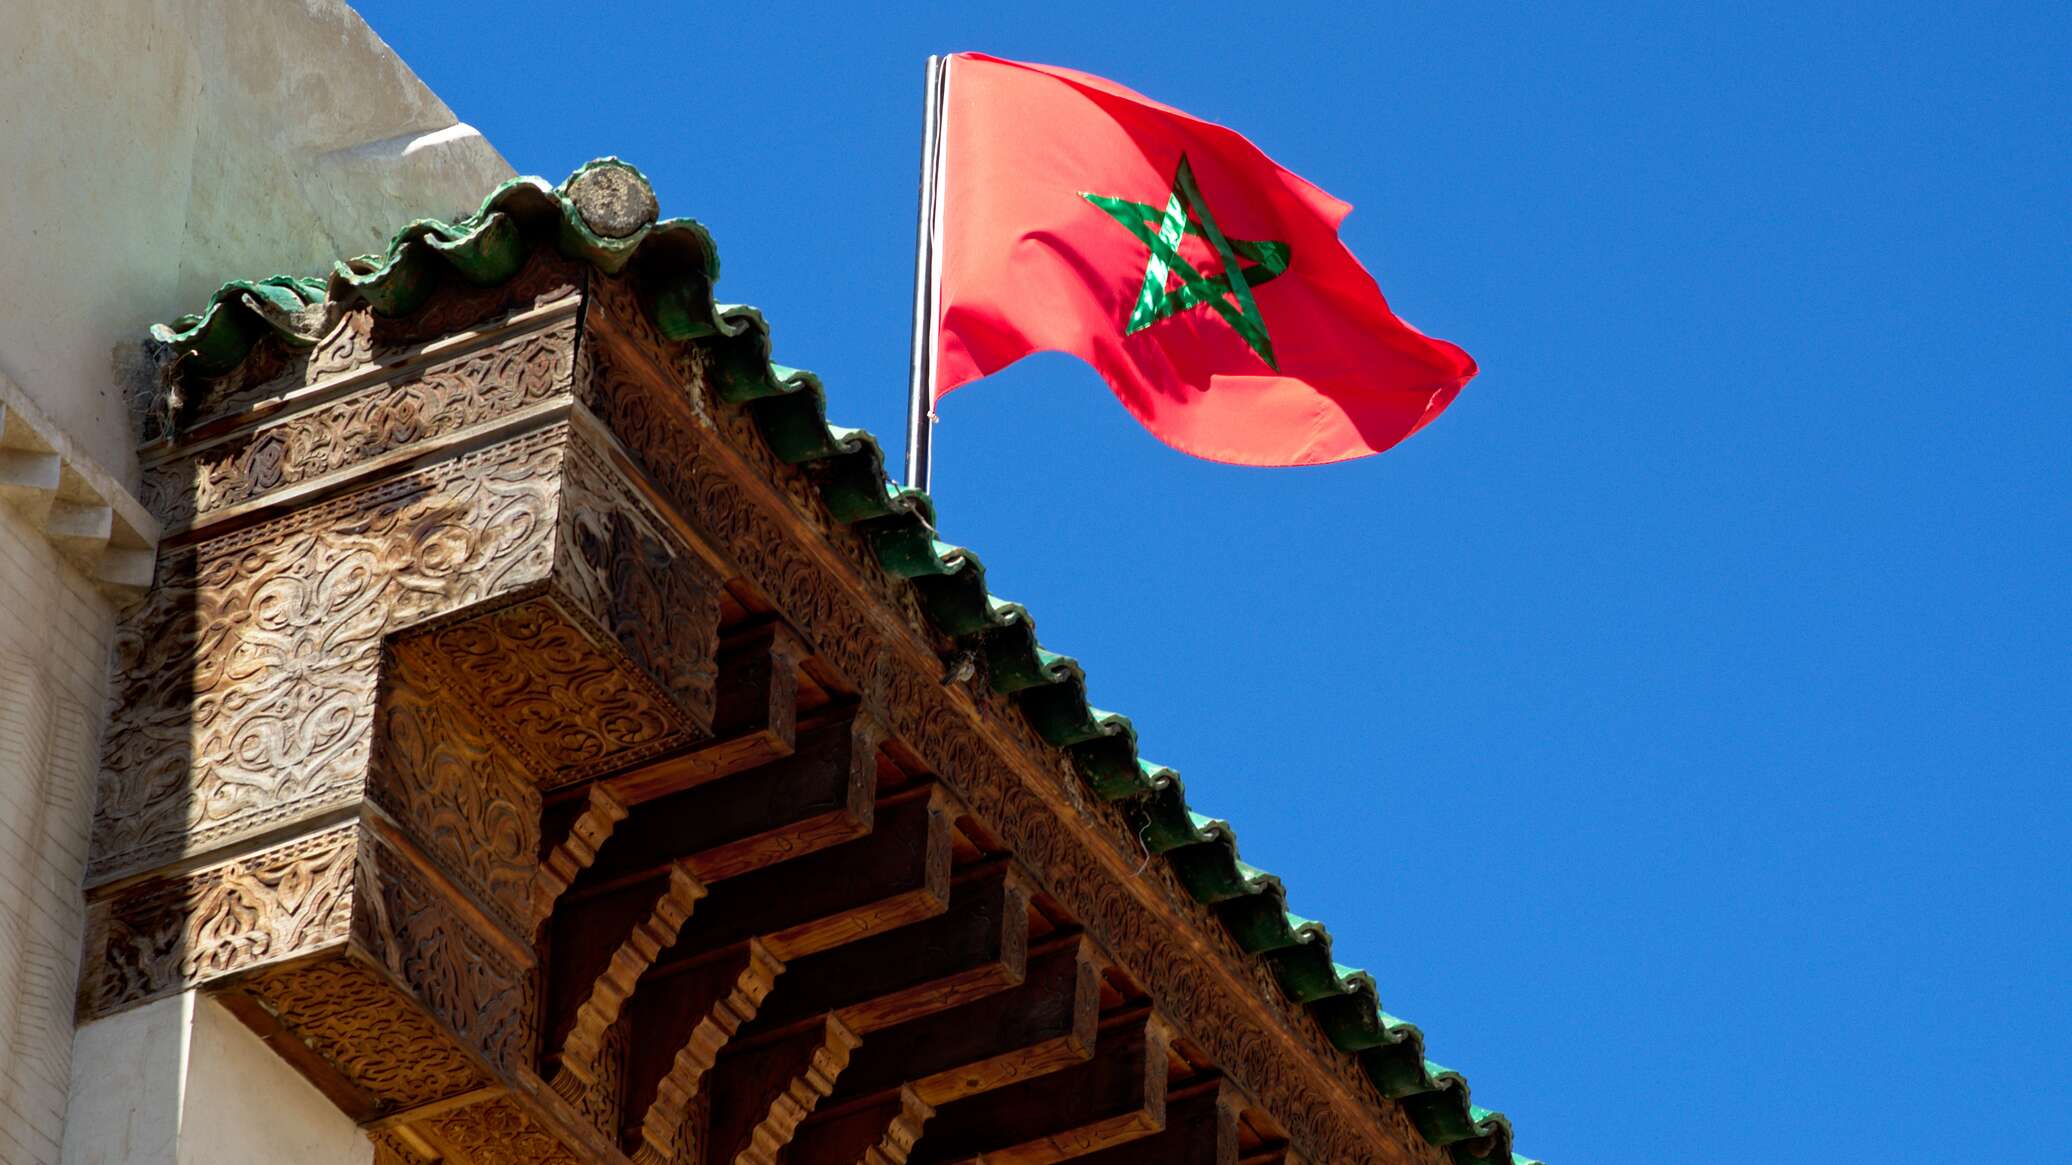 مطالب شعبية بإغلاق مكتب الاتصال الإسرائيلي في المغرب... ما إمكانية تنفيذ الخطوة؟